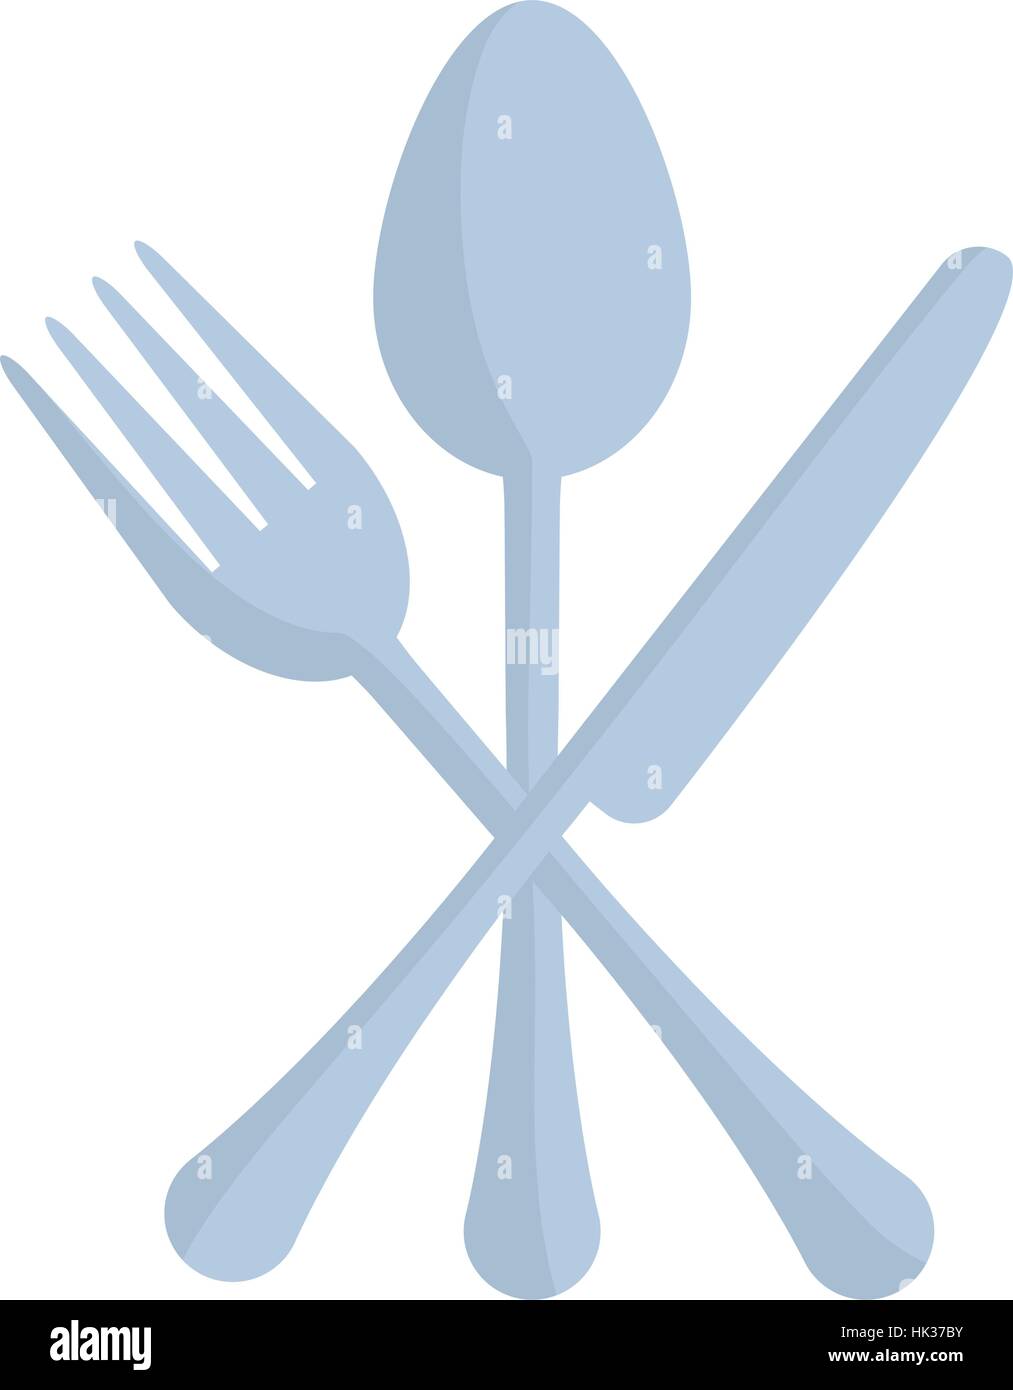 Fourchette et couteau cuillère croisés cuisine ustensile illustration  vecteur eps 10 Image Vectorielle Stock - Alamy